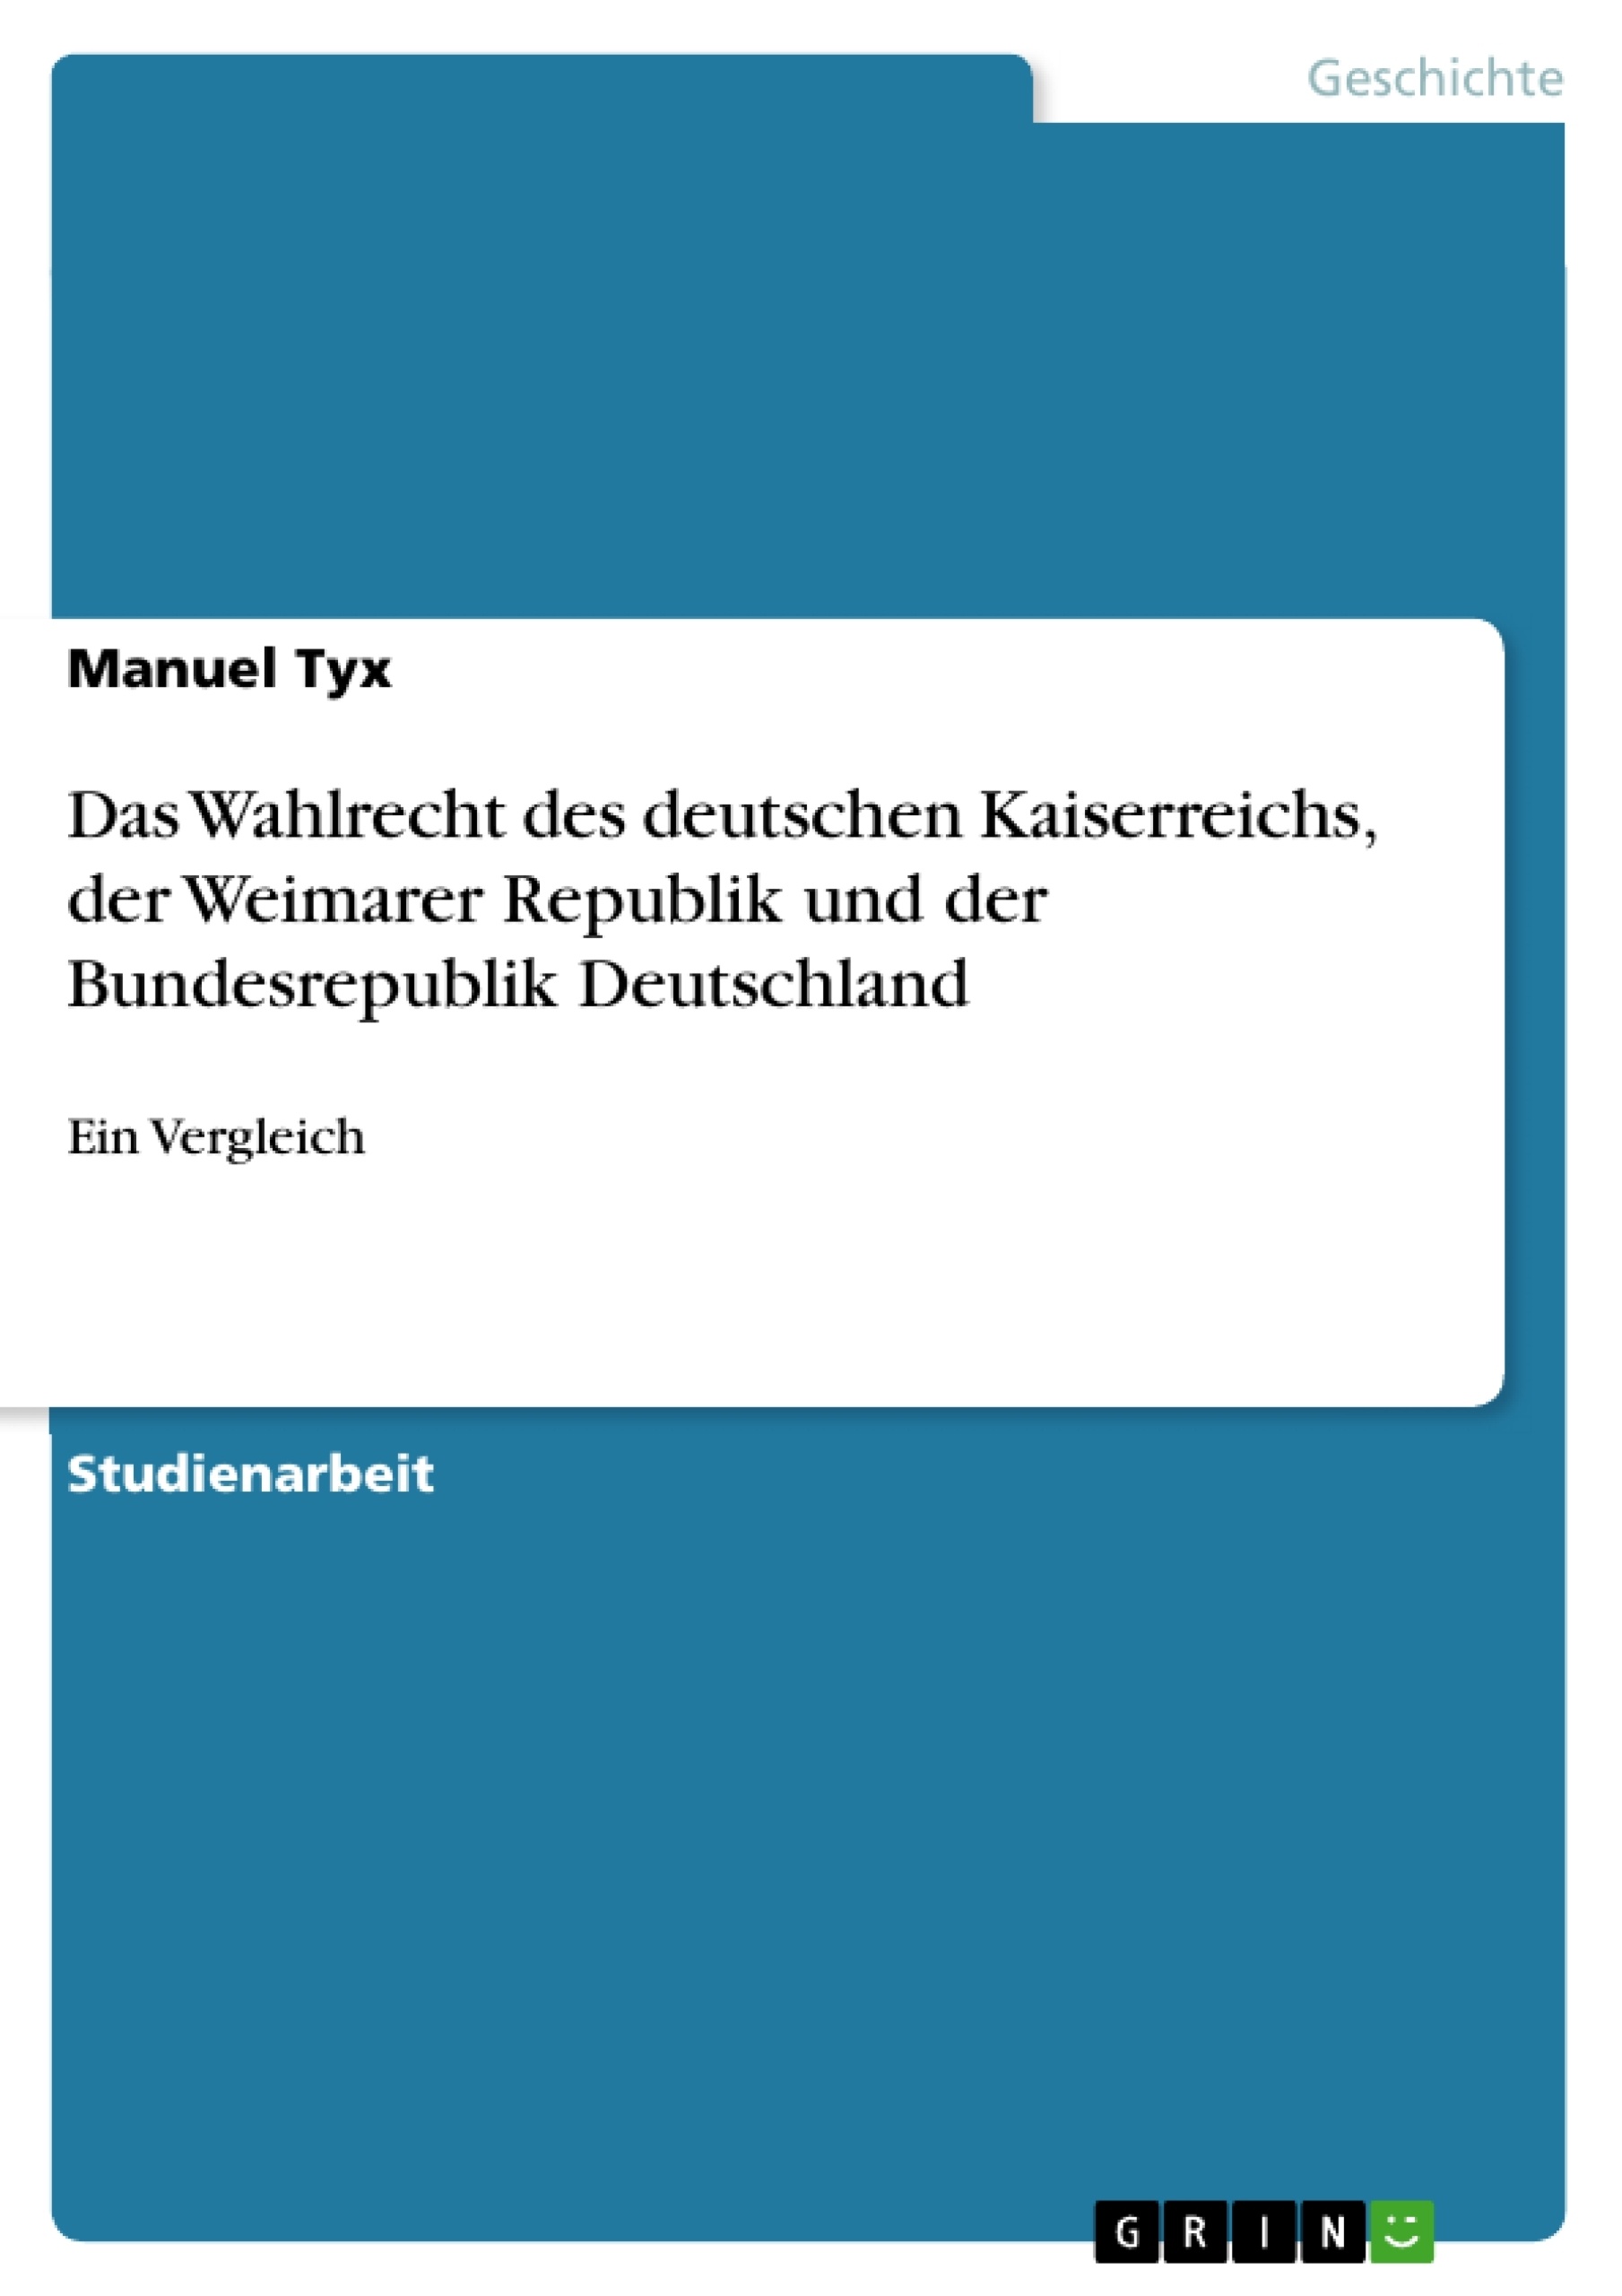 Title: Das Wahlrecht des deutschen Kaiserreichs, der Weimarer Republik und der Bundesrepublik Deutschland